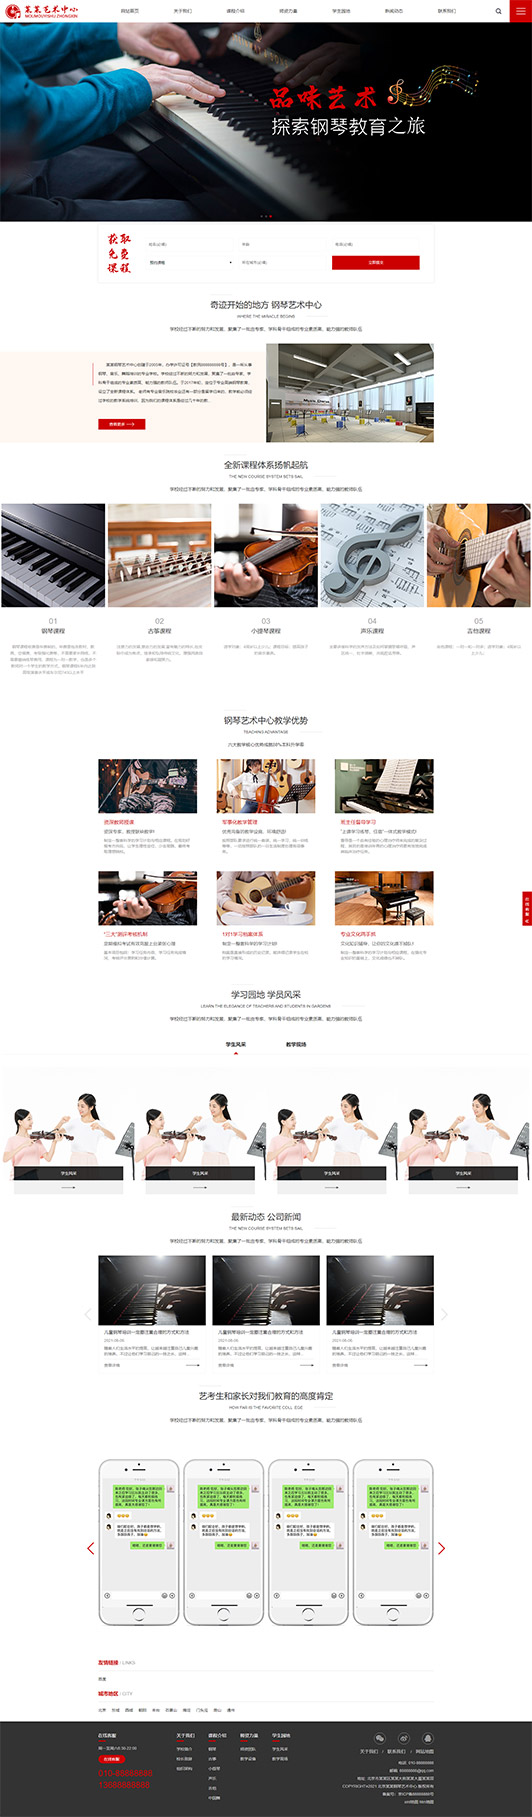 湛江钢琴艺术培训公司响应式企业网站